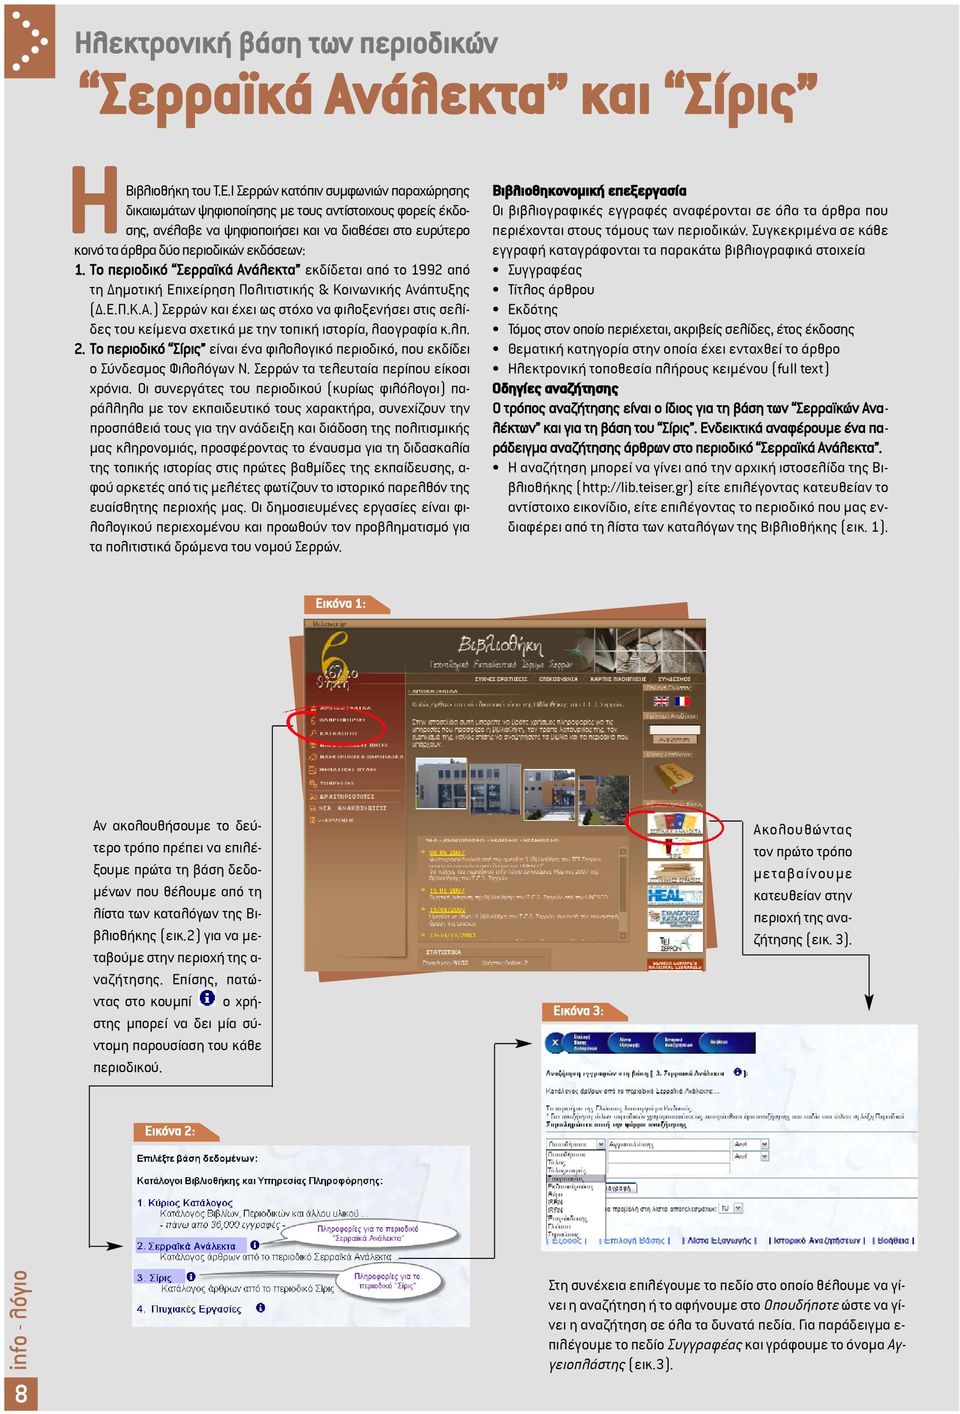 Το περιοδικό Σερραϊκά Ανάλεκτα εκδίδεται από το 1992 από τη ηµοτική Επιχείρηση Πολιτιστικής & Κοινωνικής Ανάπτυξης (.Ε.Π.Κ.Α.) Σερρών και έχει ως στόχο να φιλοξενήσει στις σελίδες του κείµενα σχετικά µε την τοπική ιστορία, λαογραφία κ.